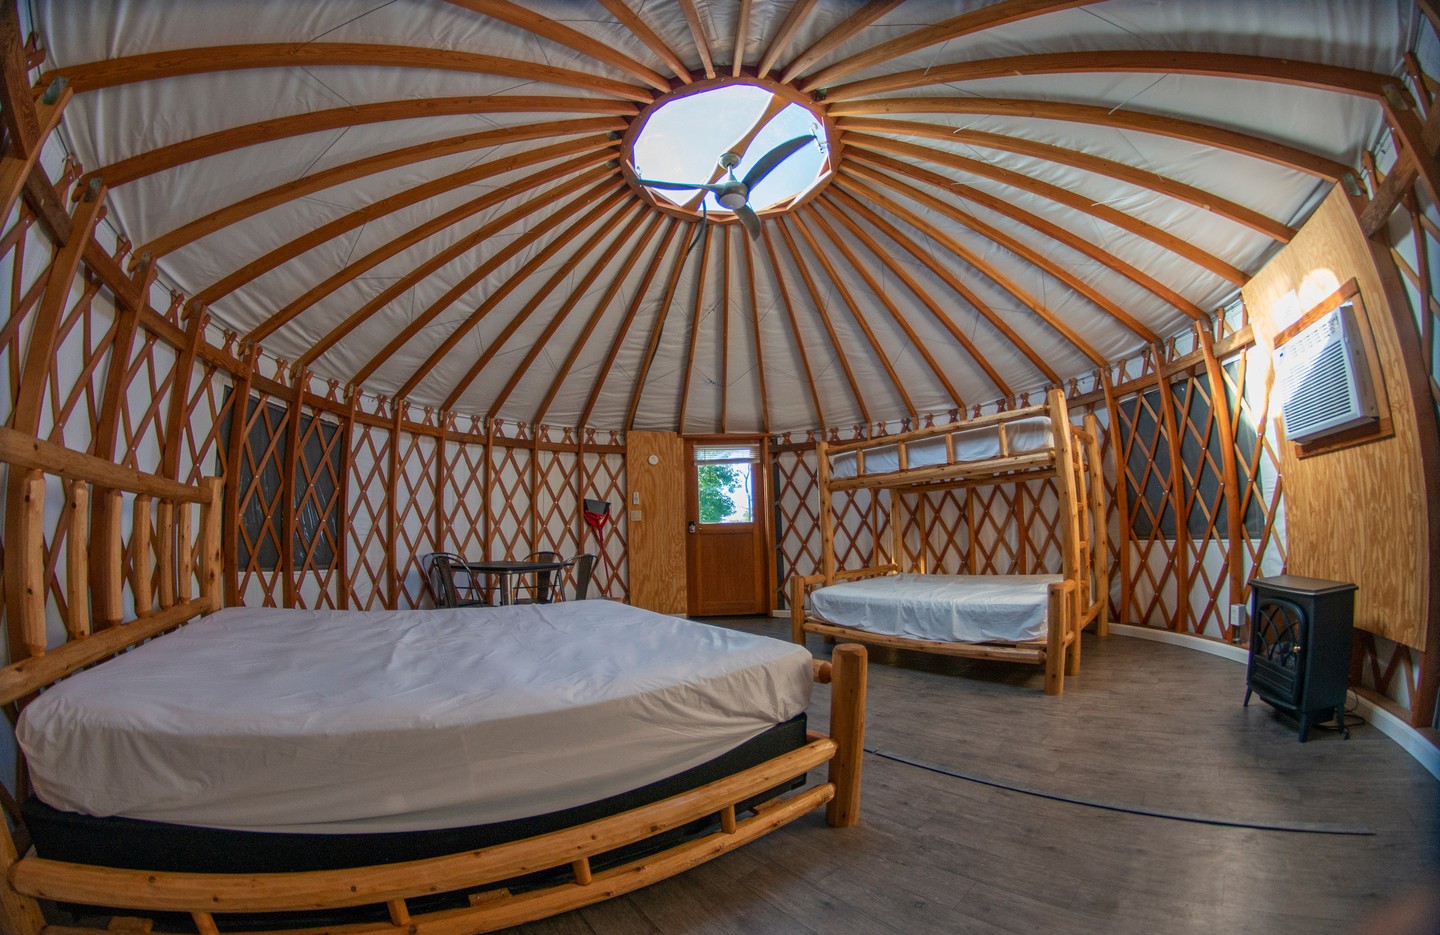 Inside Image of Yurt at Torreya